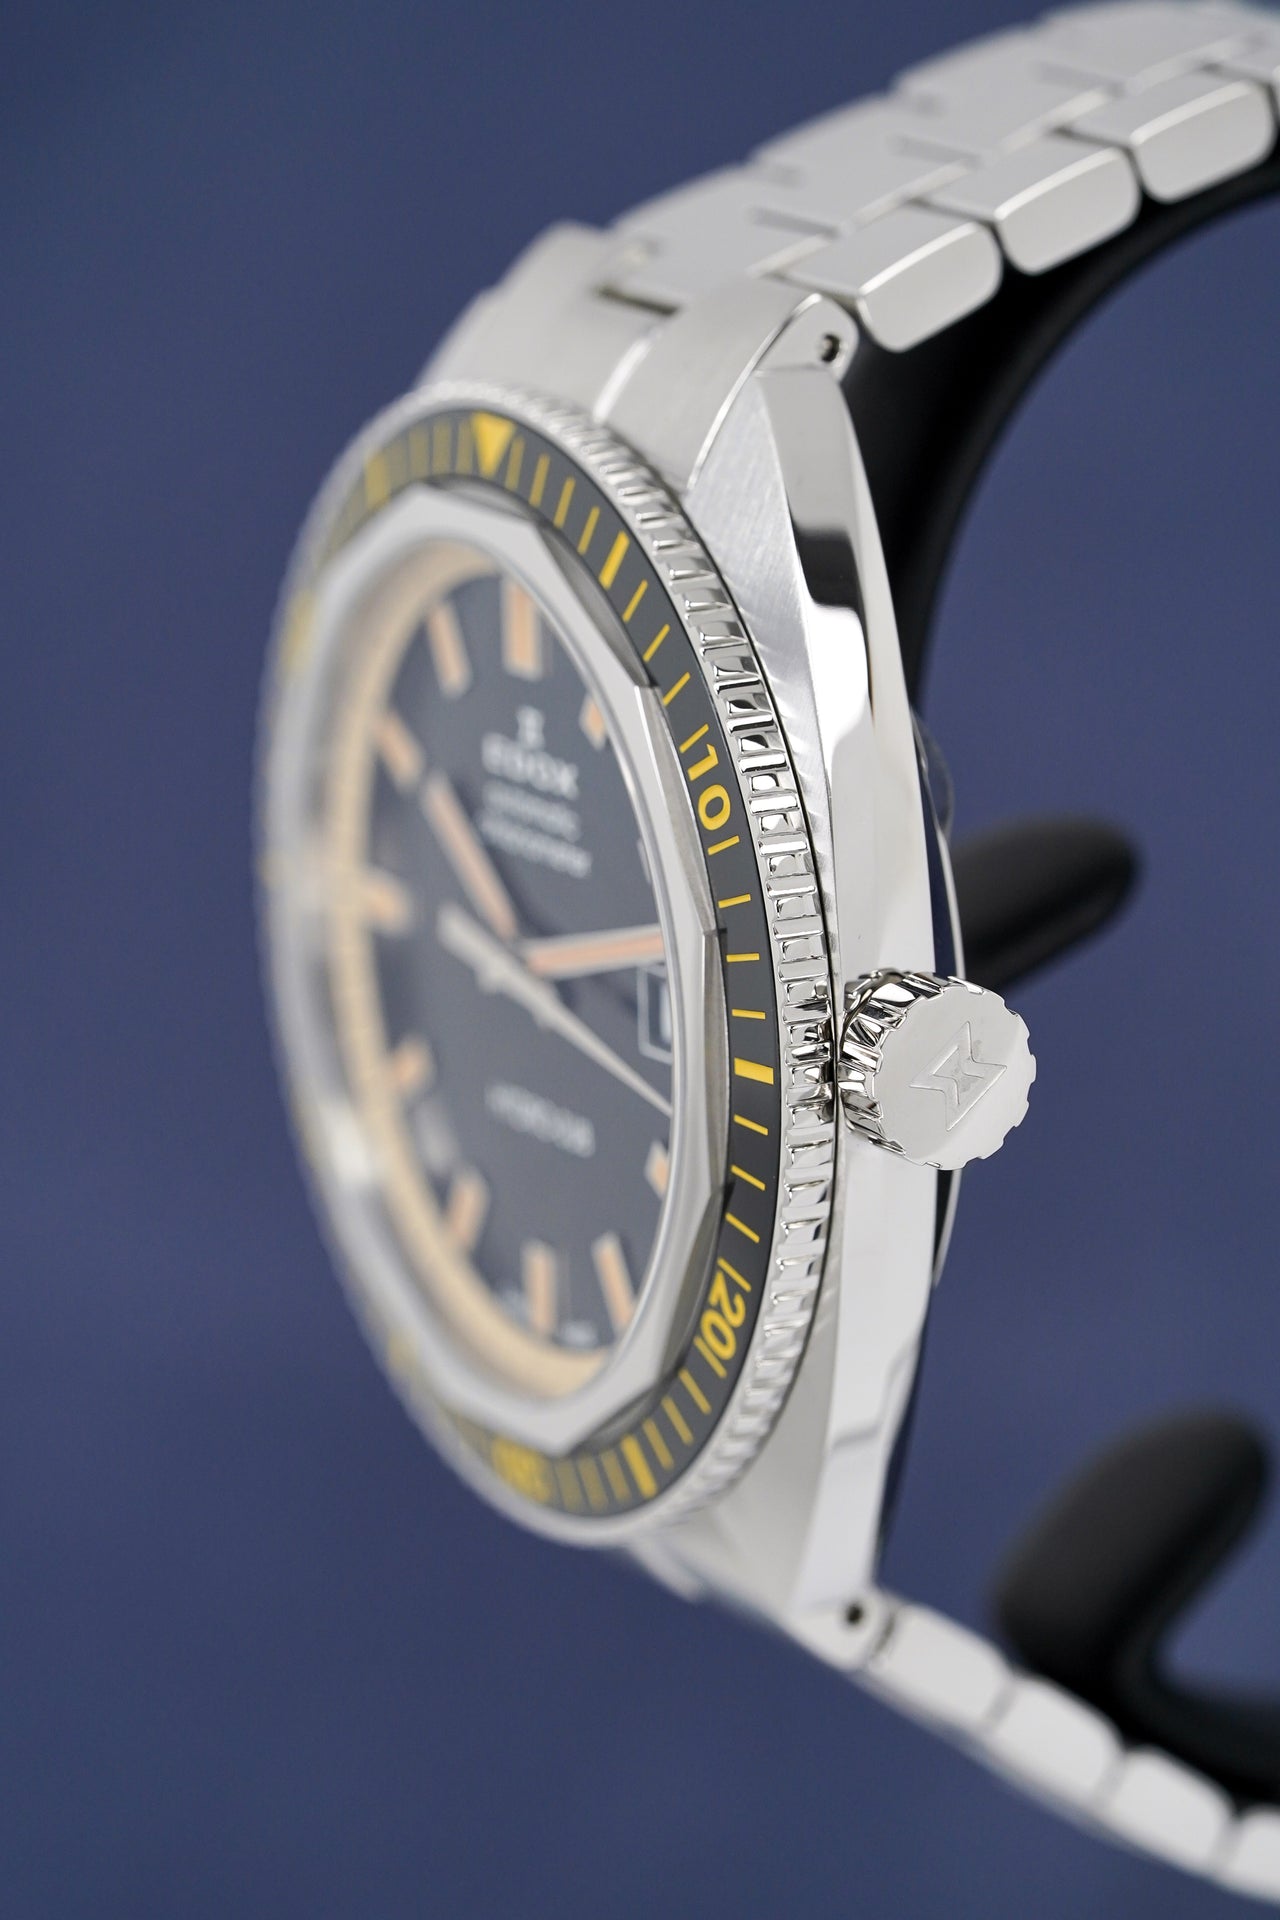 Edox Watch Hydro-Sub 1965 Chronometer Limited Edition Black 80128-3NBM-NIB